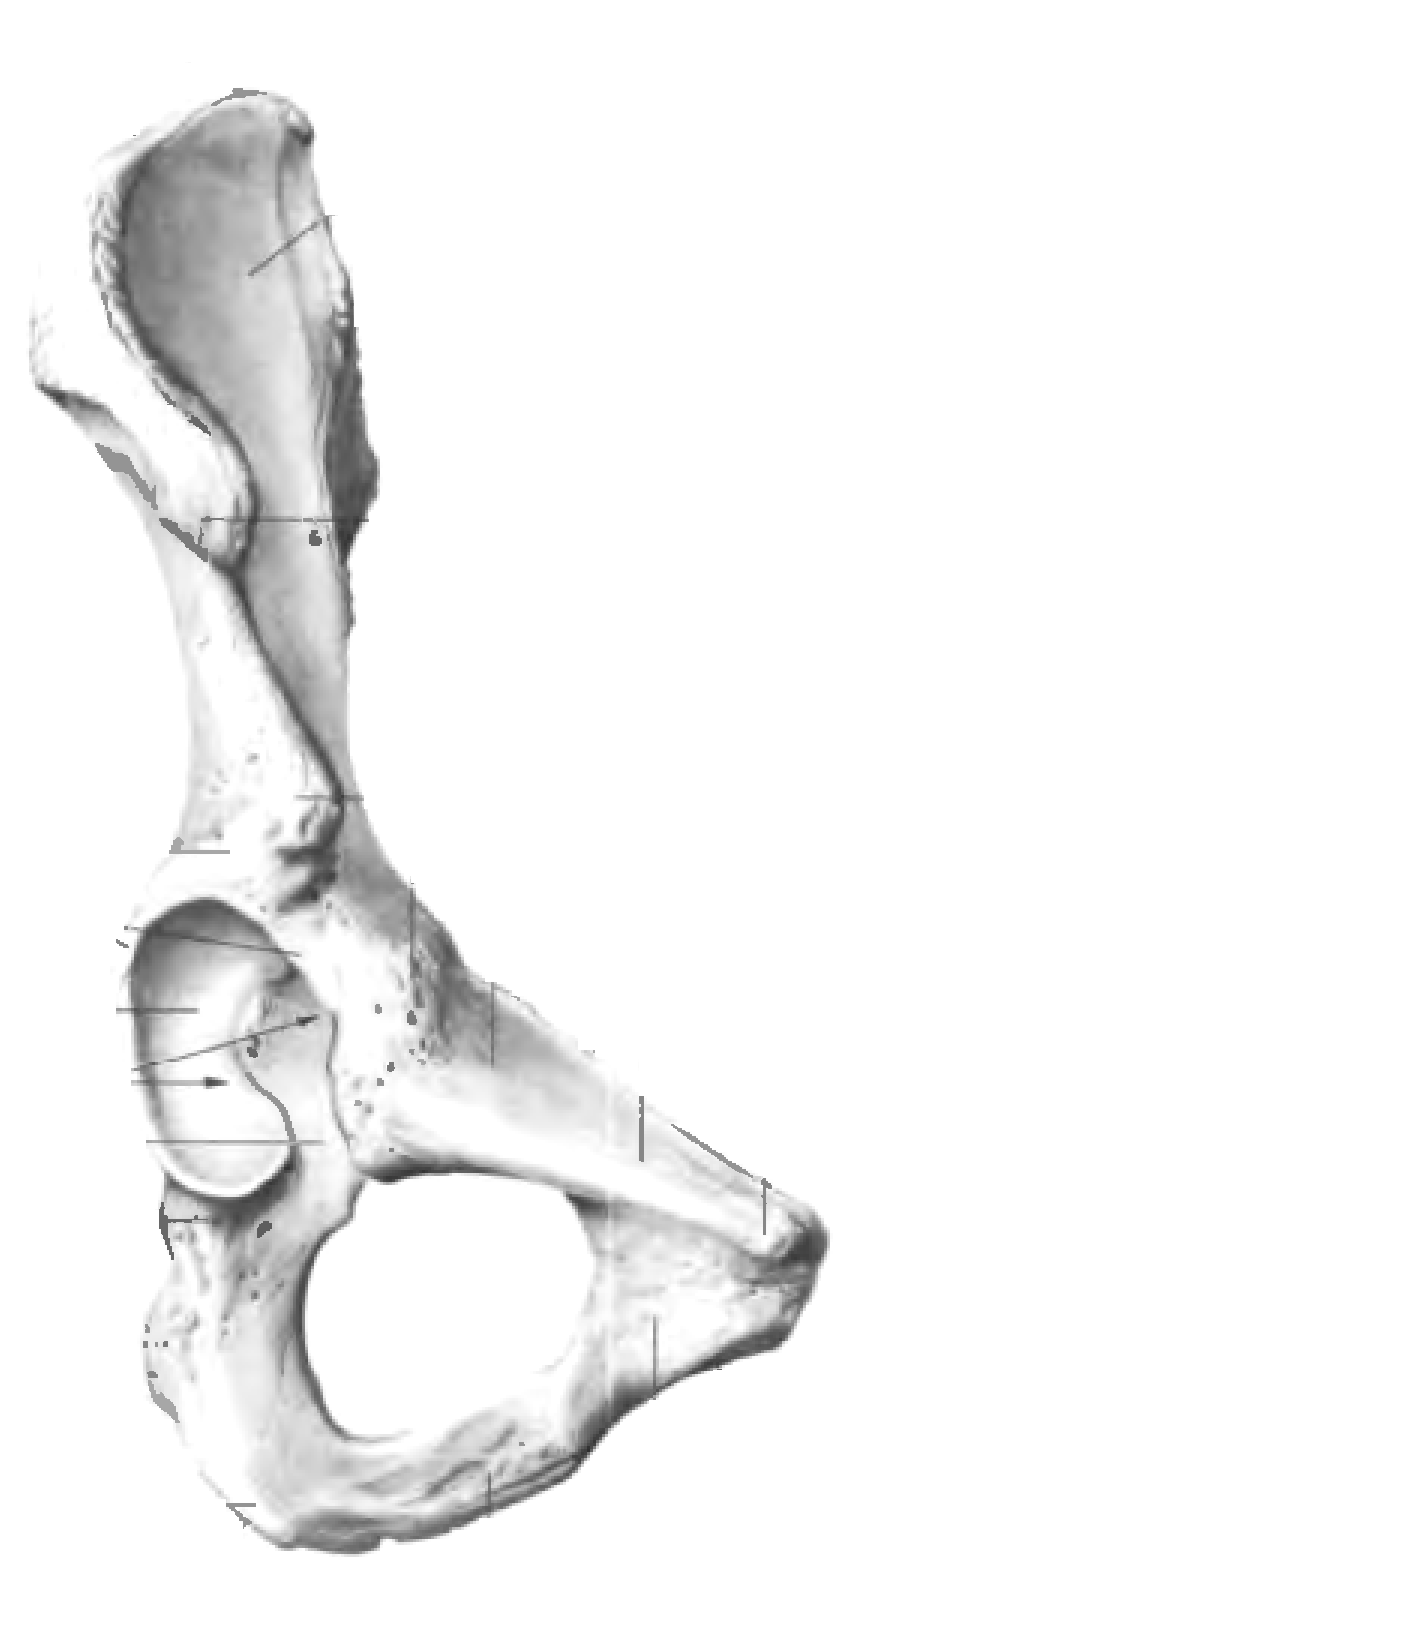 Подвздошная кость нижней конечности